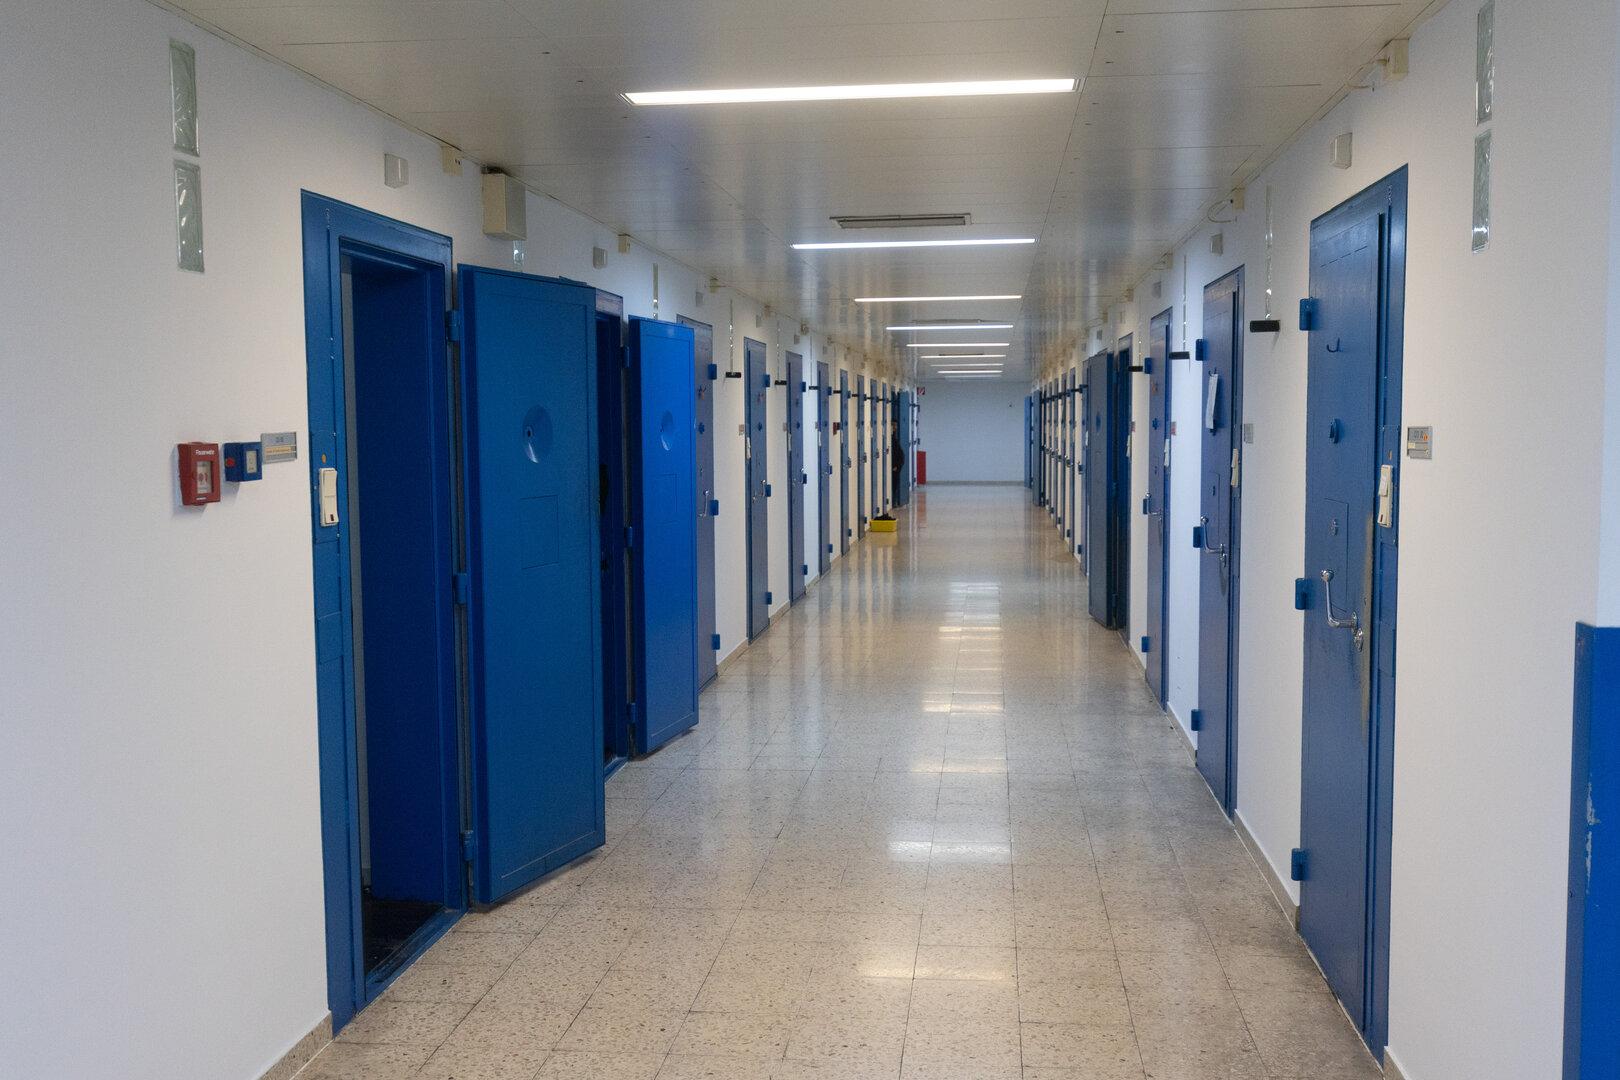 Zwei weibliche Häftlinge aus Justizanstalt Josefstadt entflohen